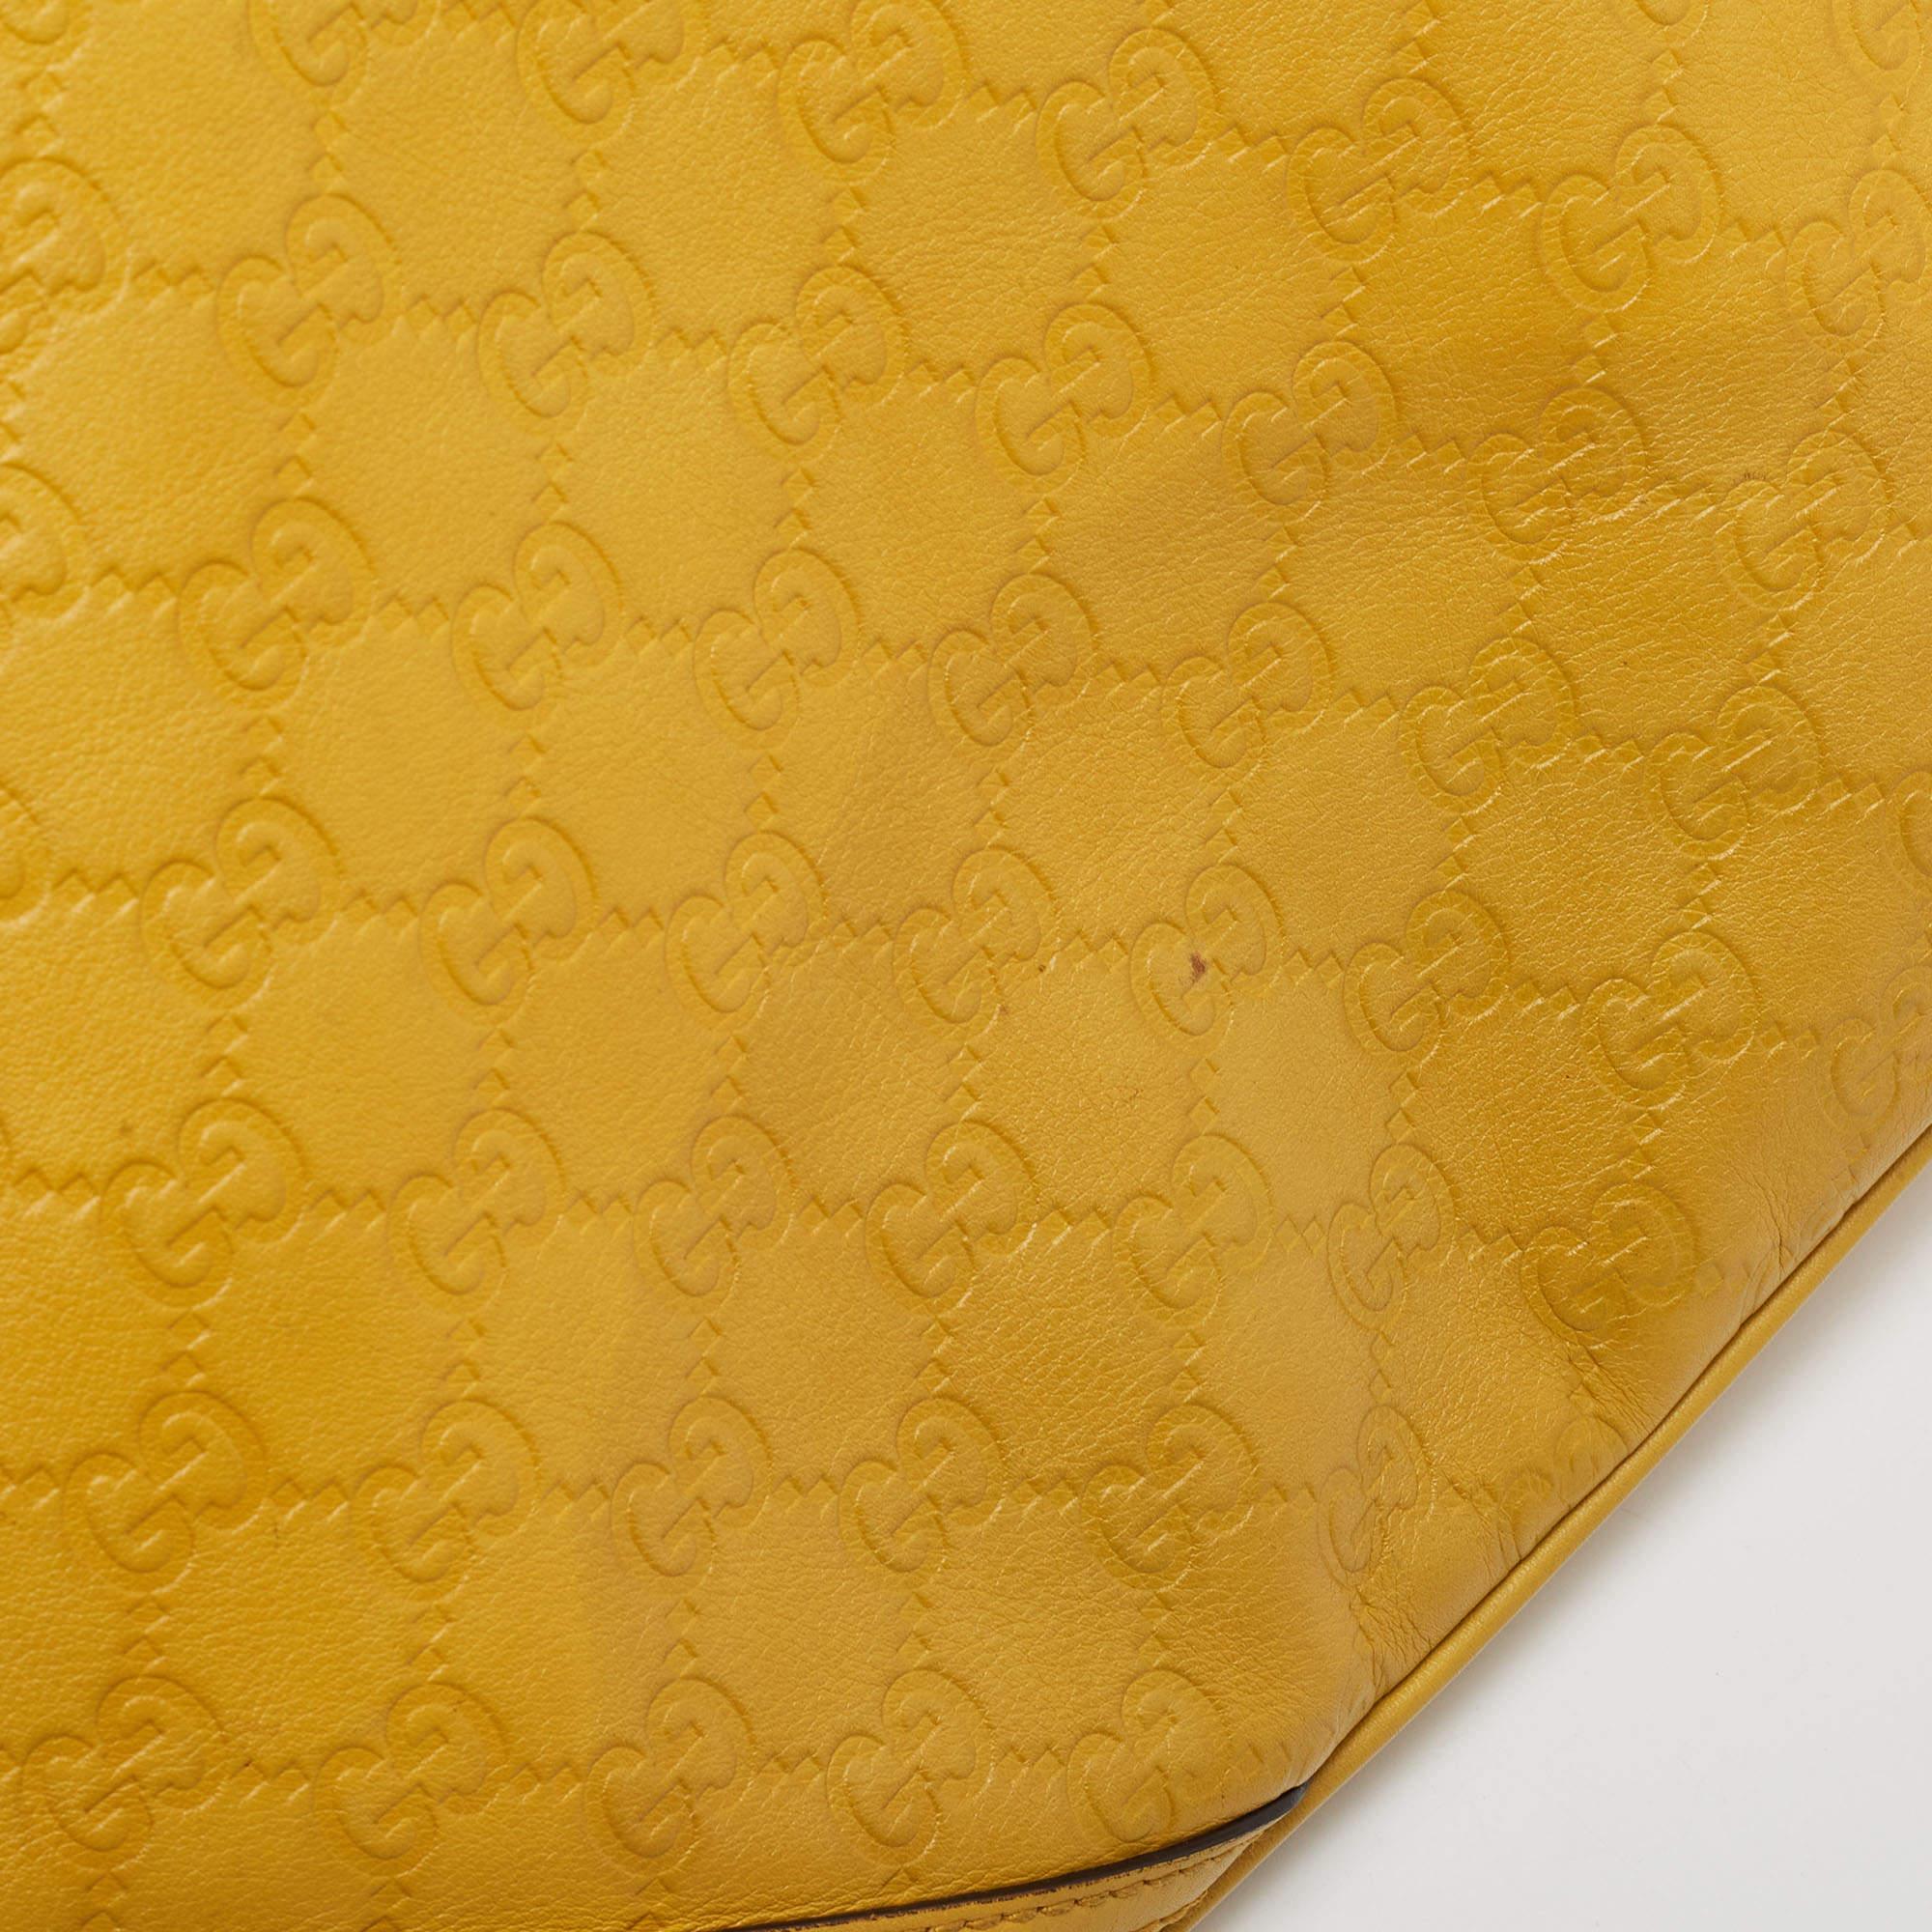 Gucci Yellow Guccissima Leather Medium Britt Hobo 3